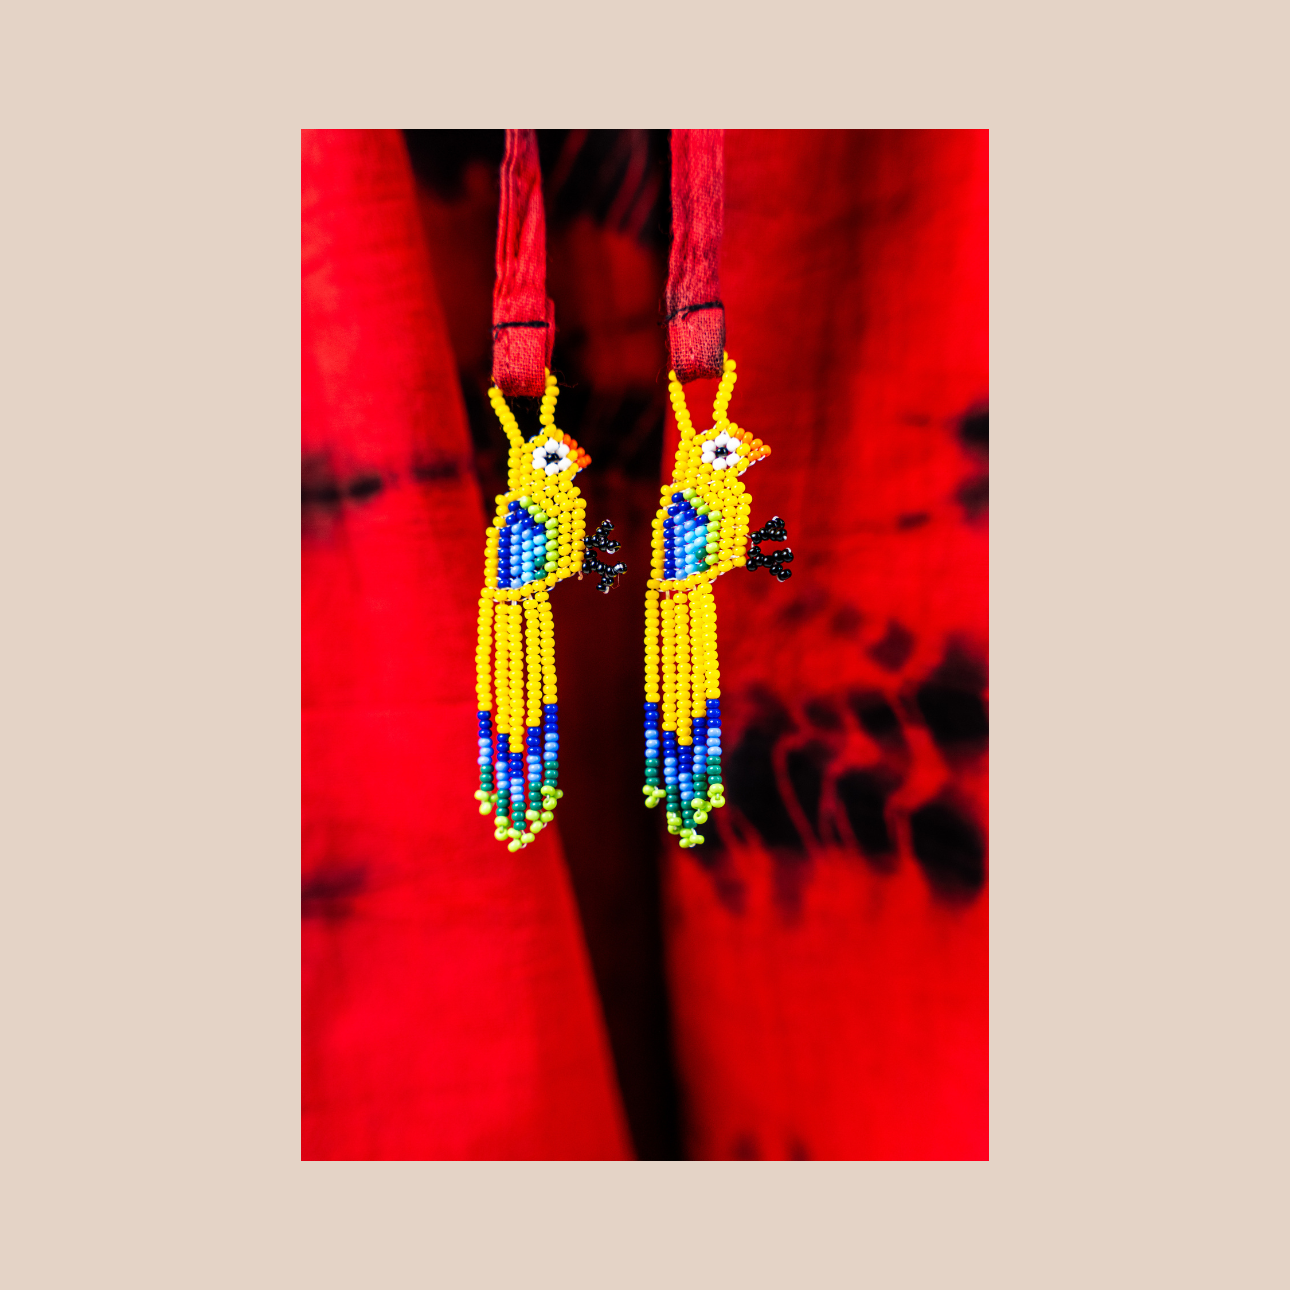 Image zoomée du pantalon Tie&Dye margarita et de ses cordons decorés de perles de Maison Badigo